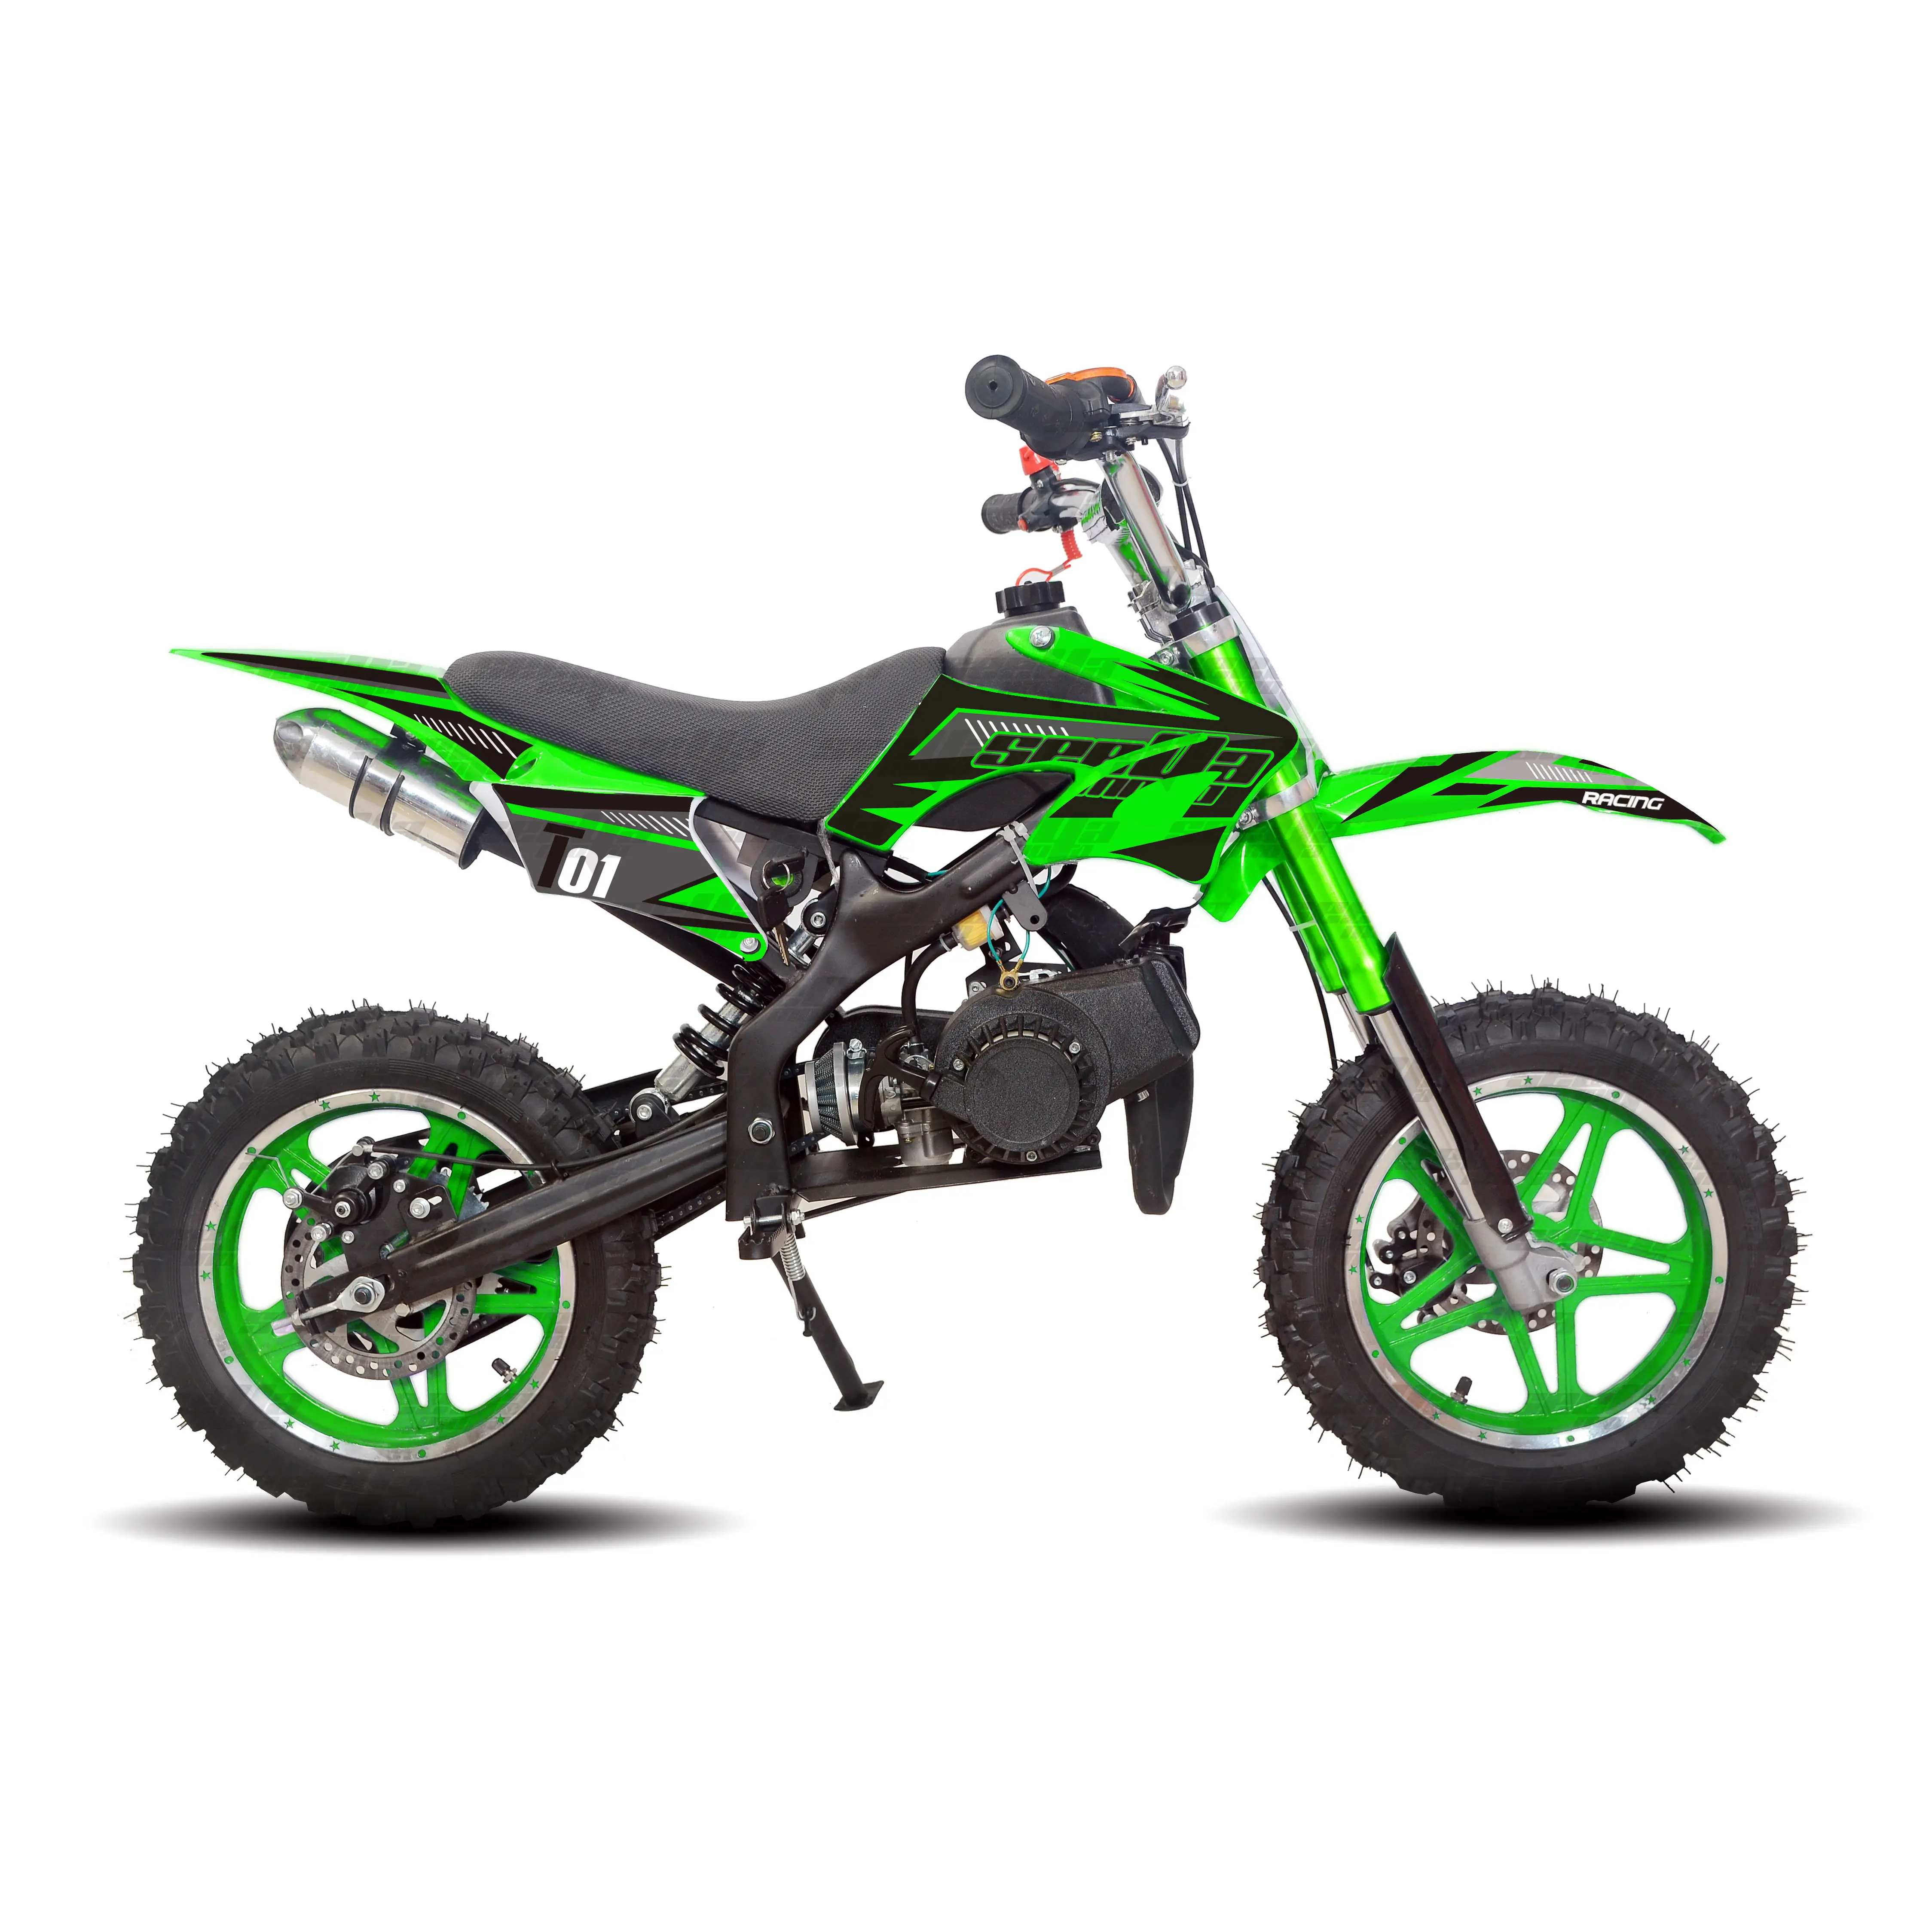 Nouveau mini cross moto vert 49cc 2 temps entièrement automatique pit bike enfants dirt bike cross moto T01 avec CE